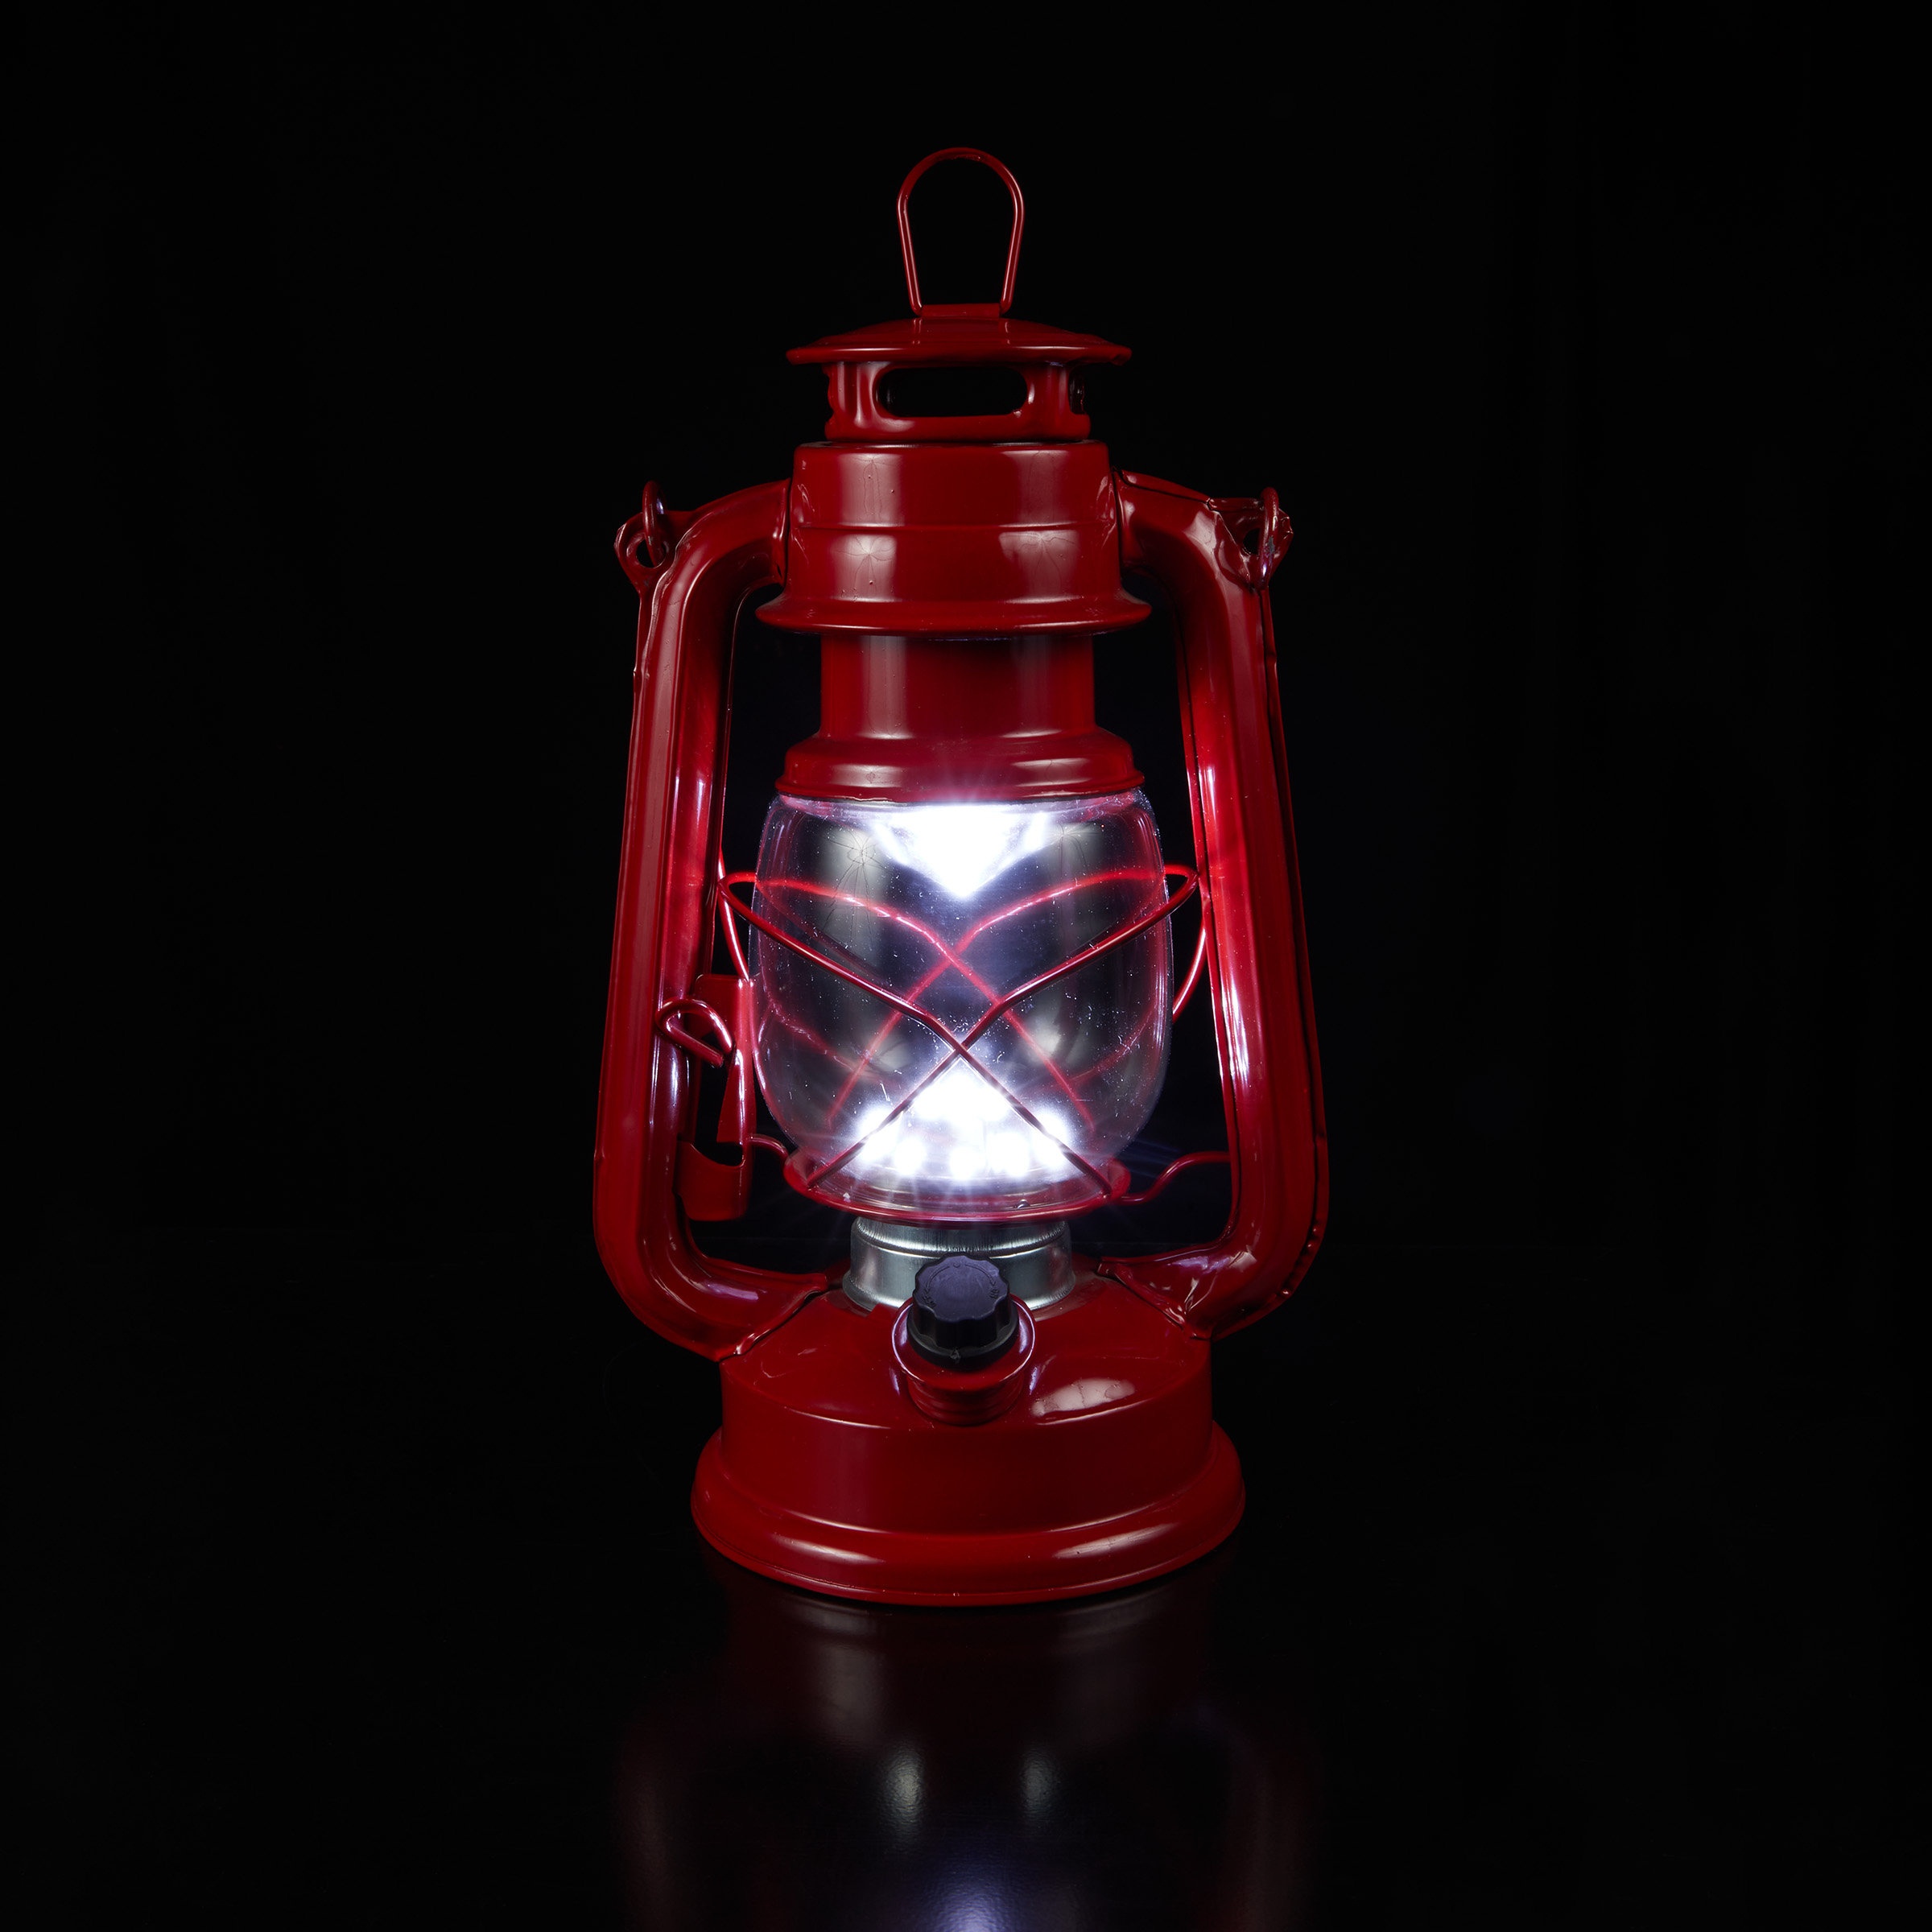 14 Hexagonal Candlelit Iron Lantern with LED Lights Black/White - Alpine Corporation